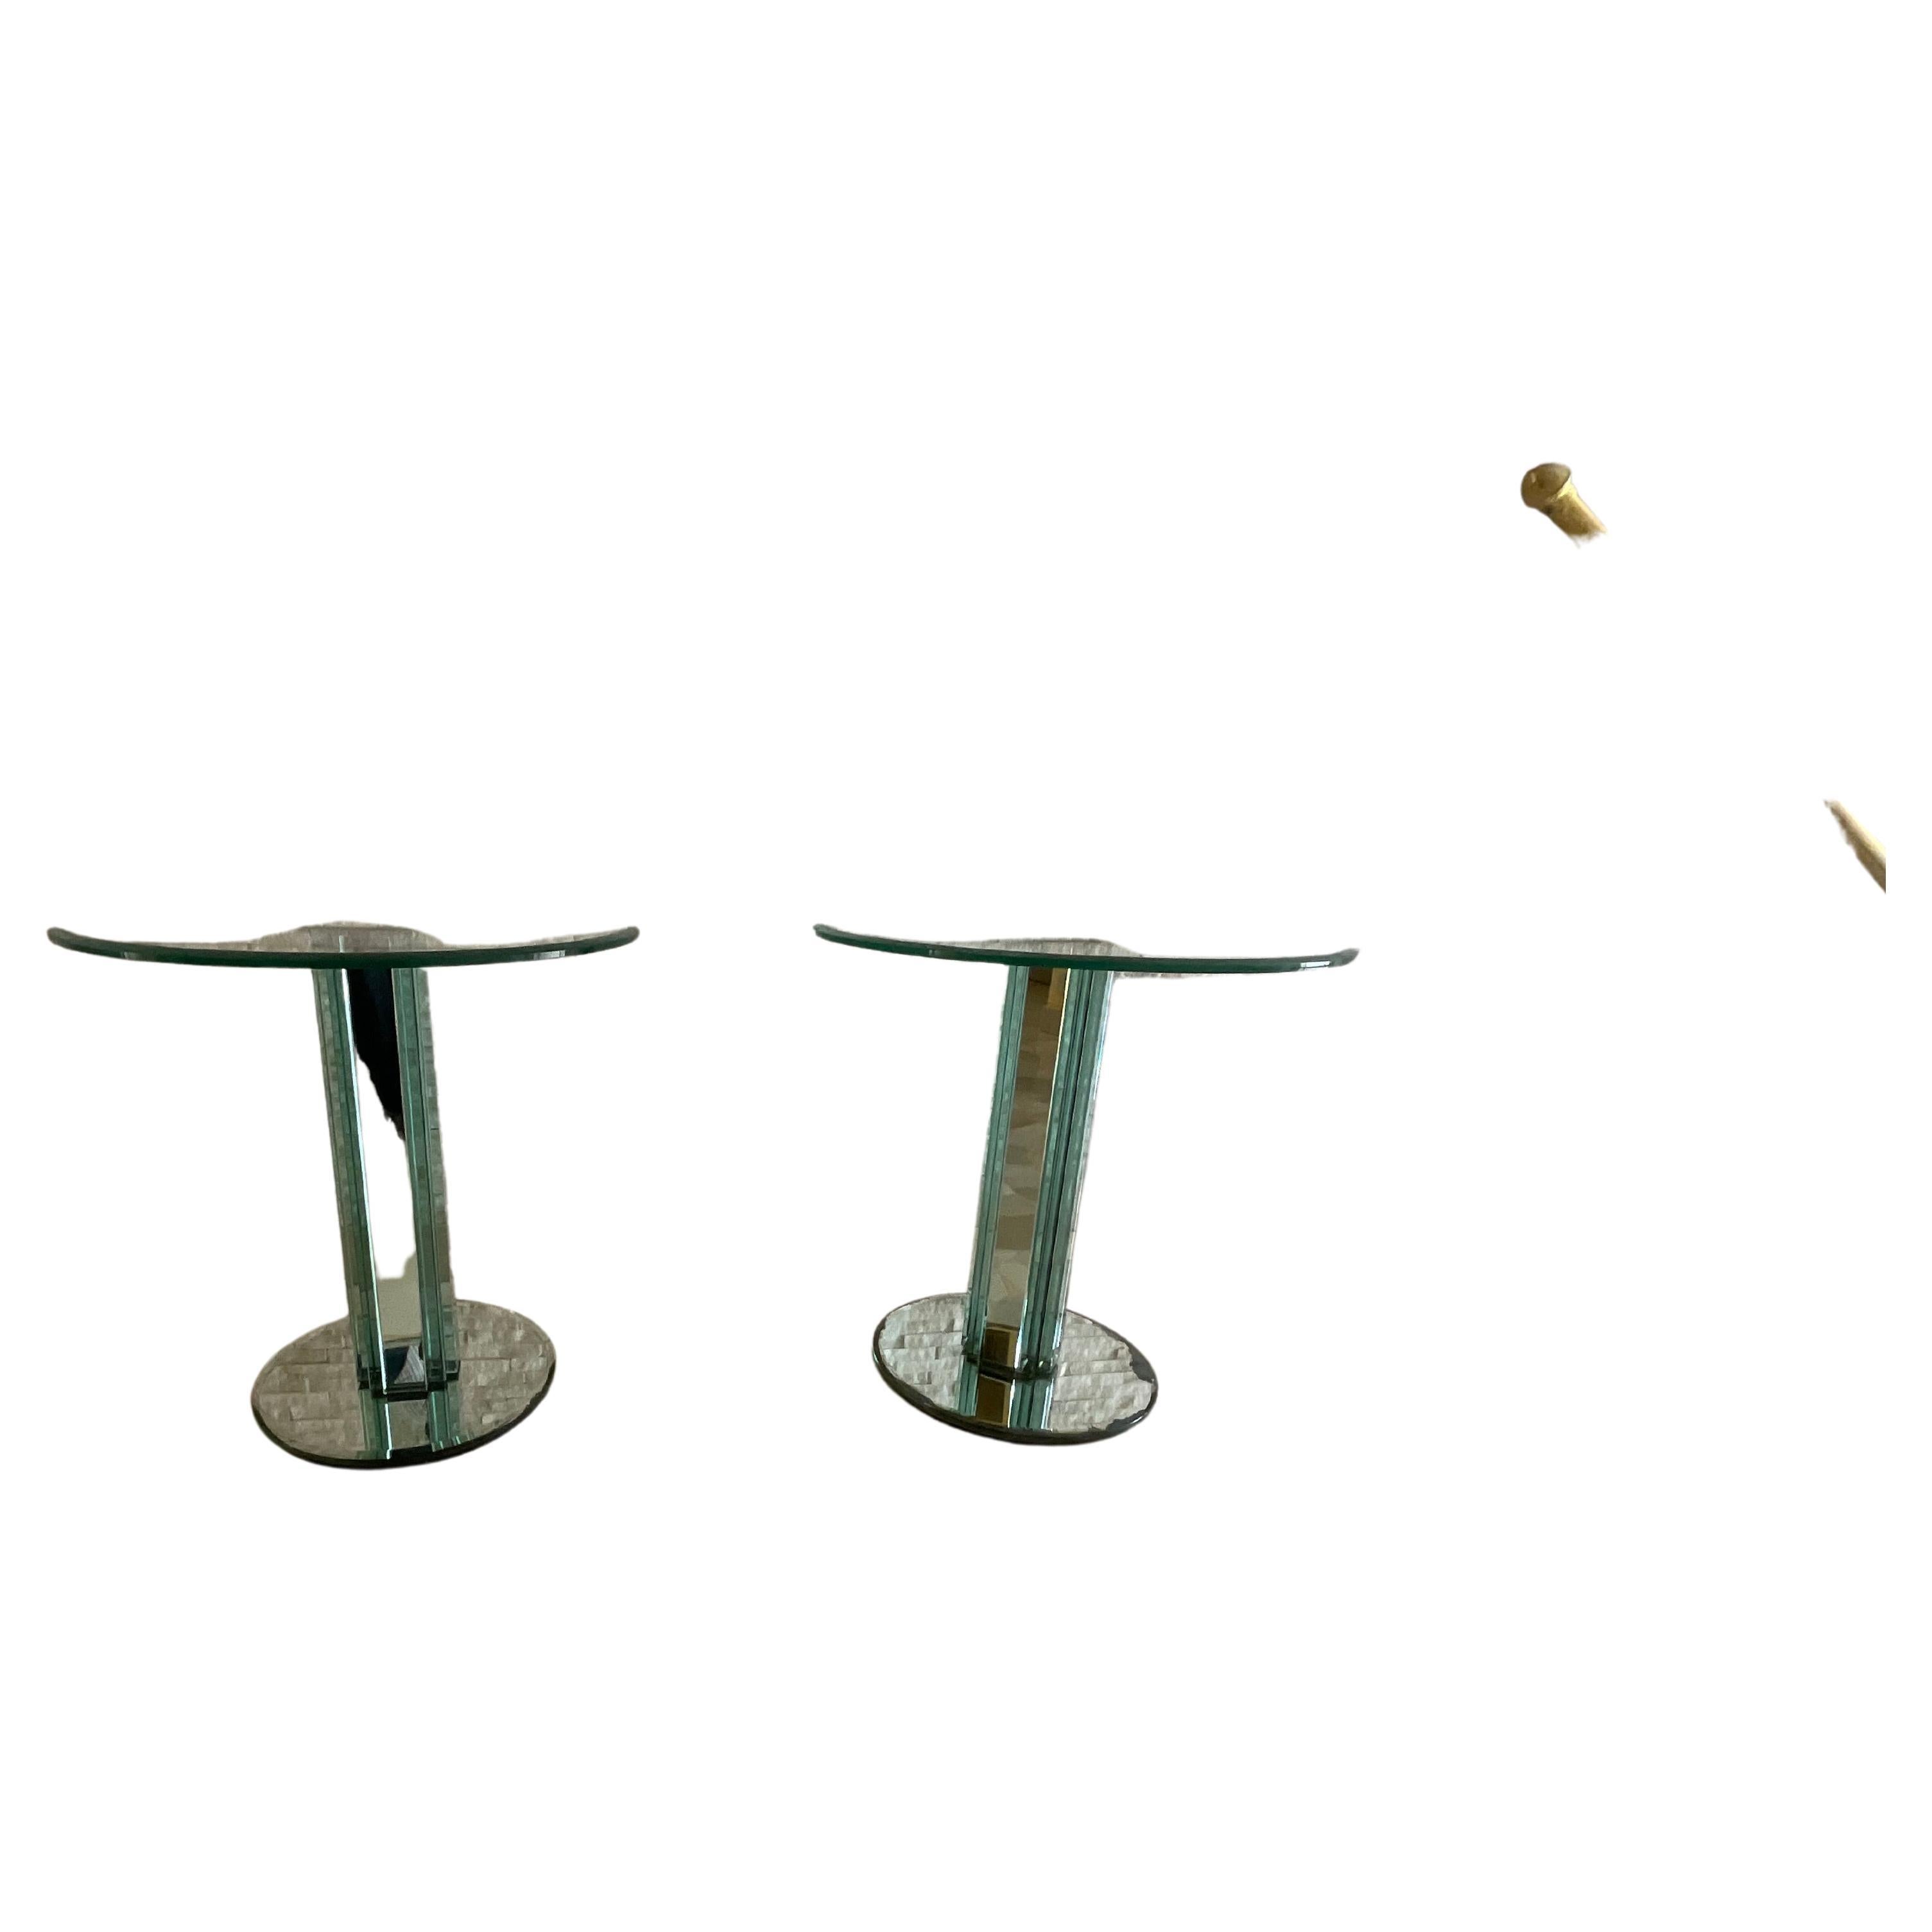 Ein Paar Couchtische aus dickem Glas mit einem hochwertigen Metallgestell, Modell GOLF, entworfen von Luigi Massoni und hergestellt von der Firma Gallotti & Radice im Jahr 1980.
Feuchtigkeit Flecken können in einigen Bereichen der verspiegelten